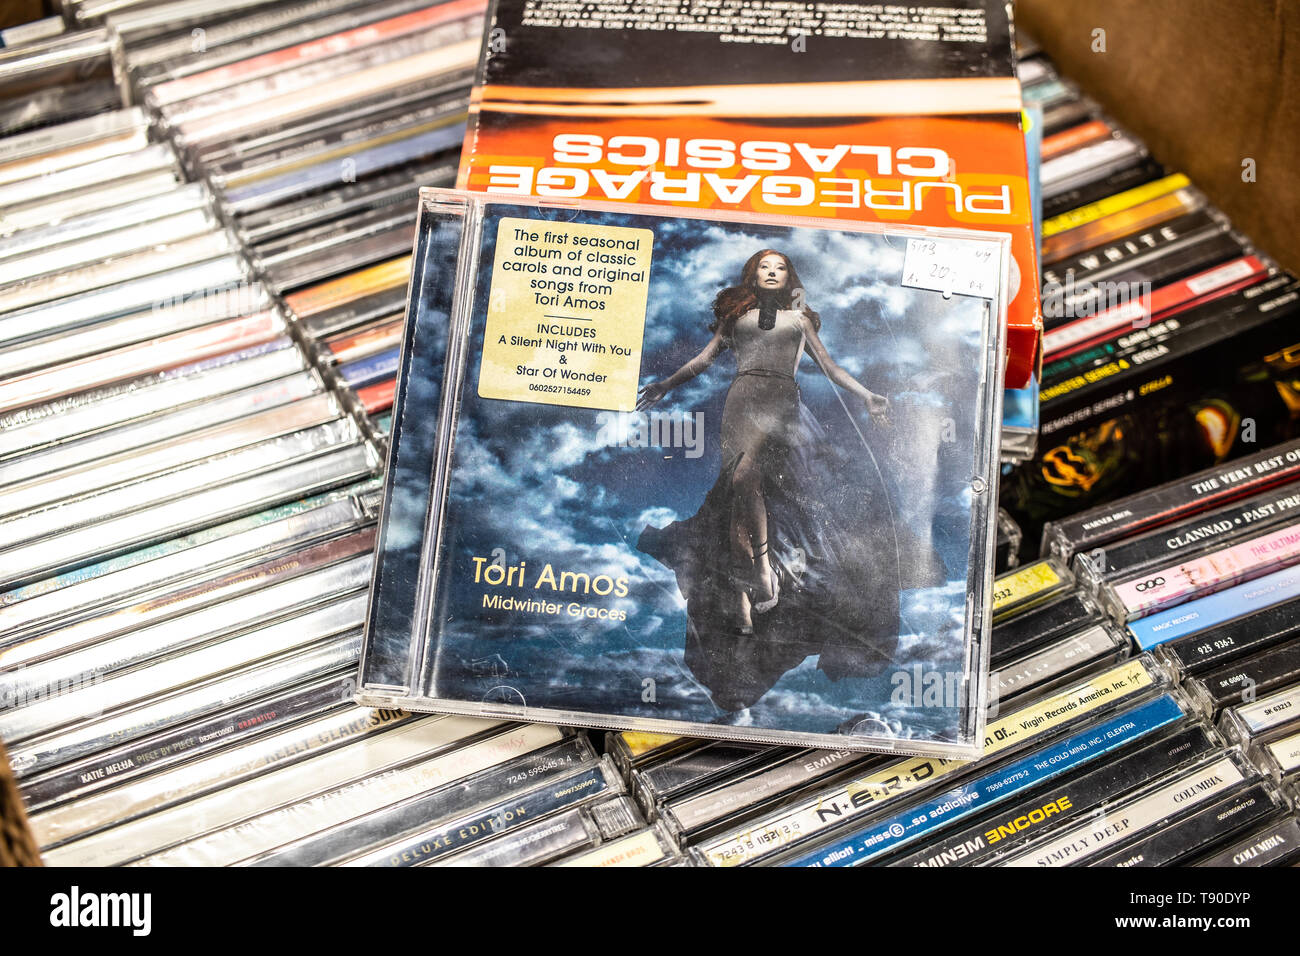 Corato, Polen, 11. Mai 2019: Tori Amos CD Album Midwinter Graces 2009 auf Anzeige für Verkauf, der berühmte amerikanische Sänger, Songschreiber und Pianist, Stockfoto